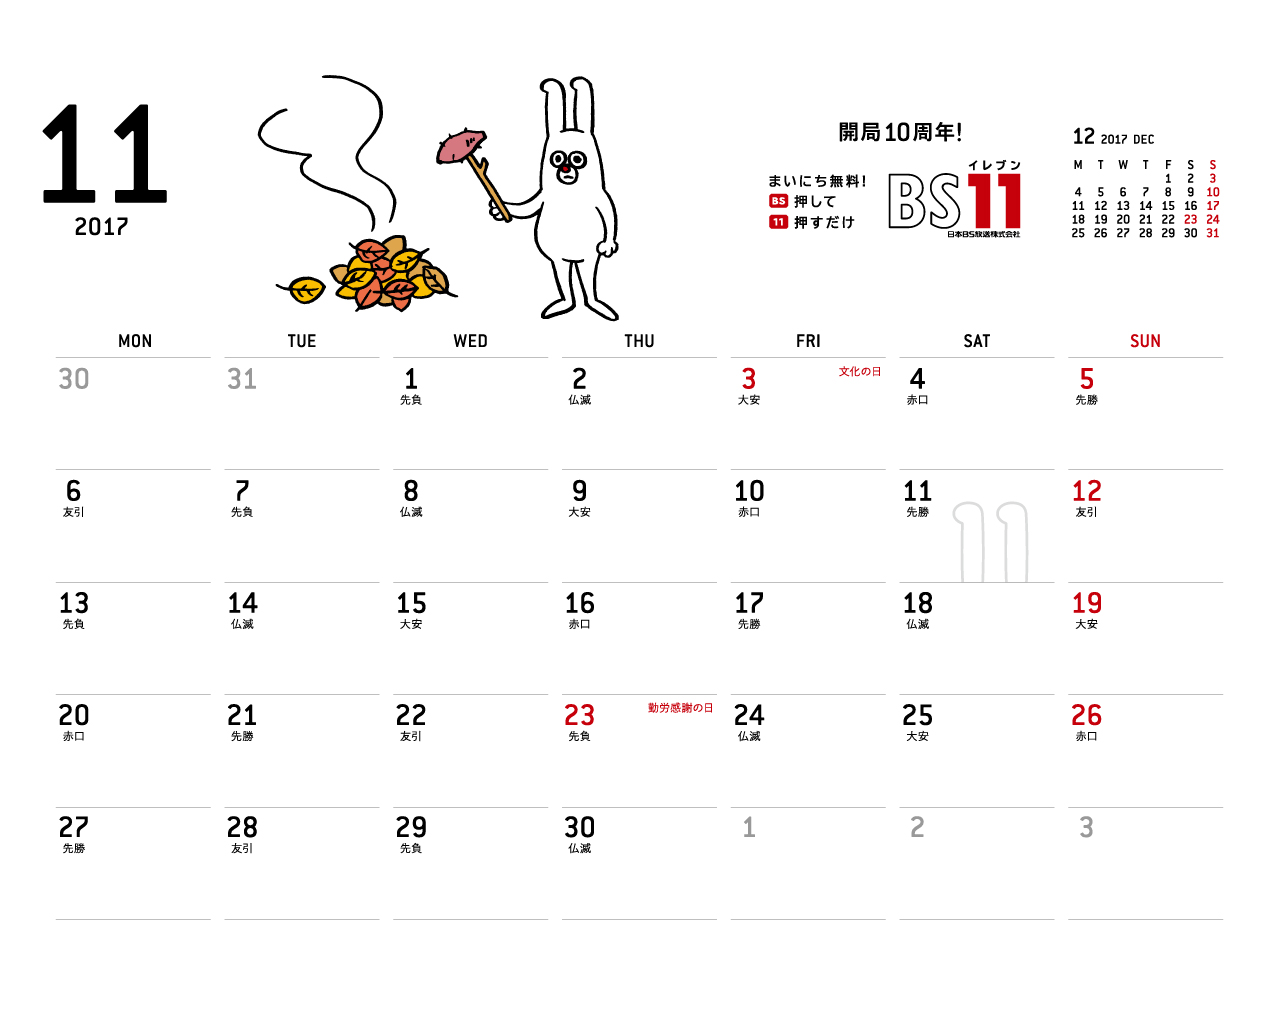 じゅういっちゃんのデジタルカレンダー17年11月 Bs11 イレブン いつでも無料放送